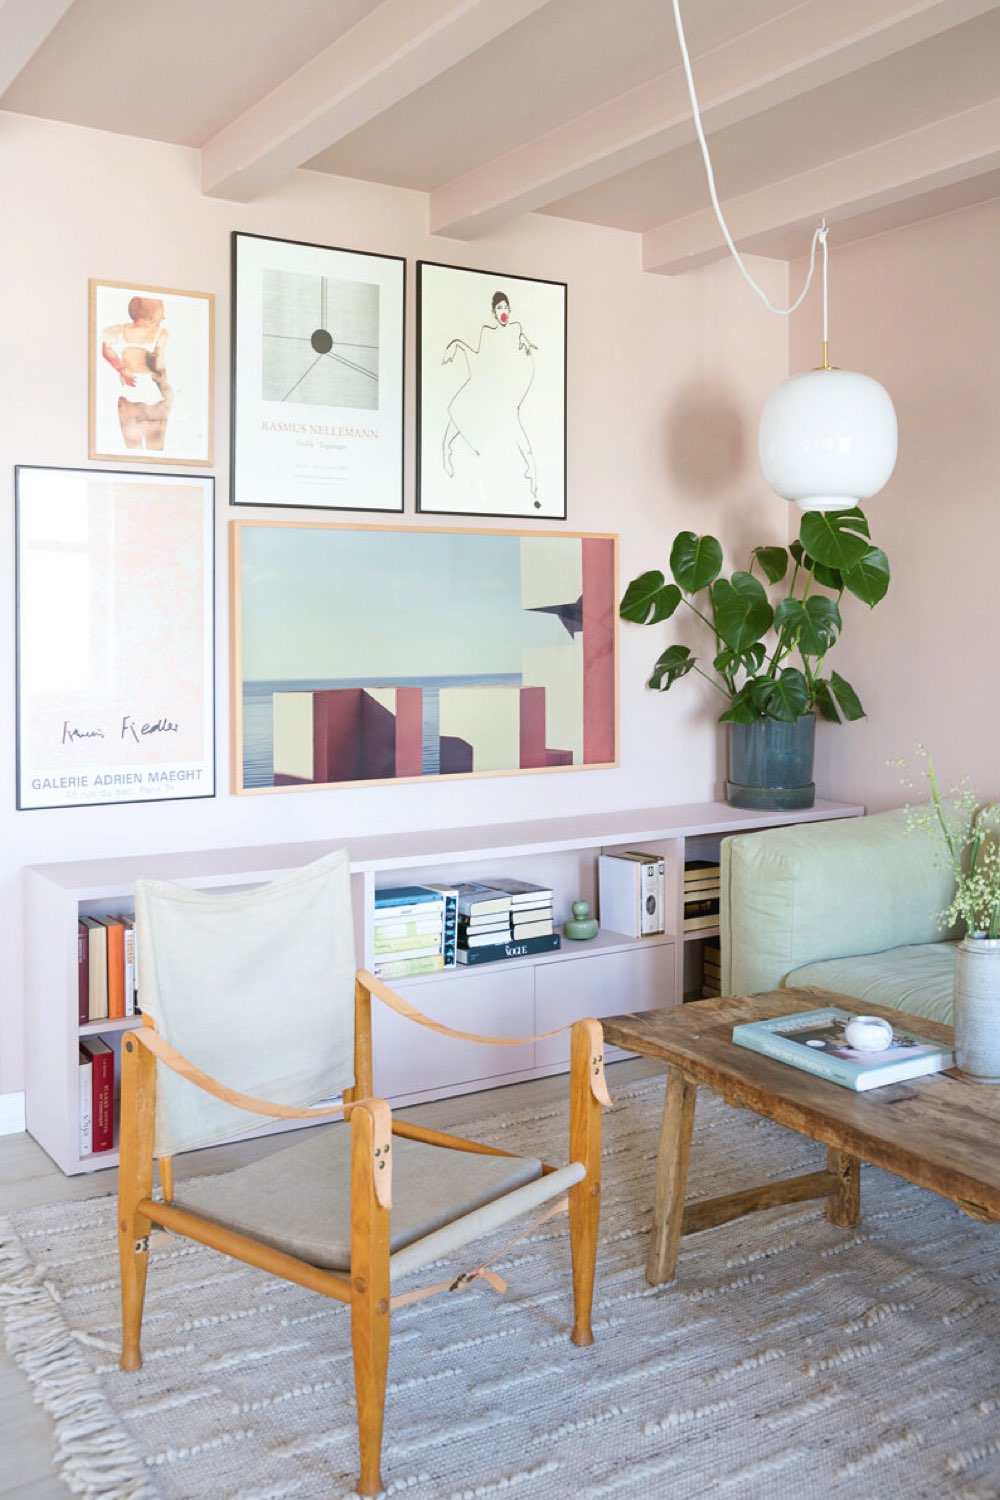 interieur deco peinture pastel peinture salon rose clair plafond meuble bibliothèque ton sur ton table basse bois récup'